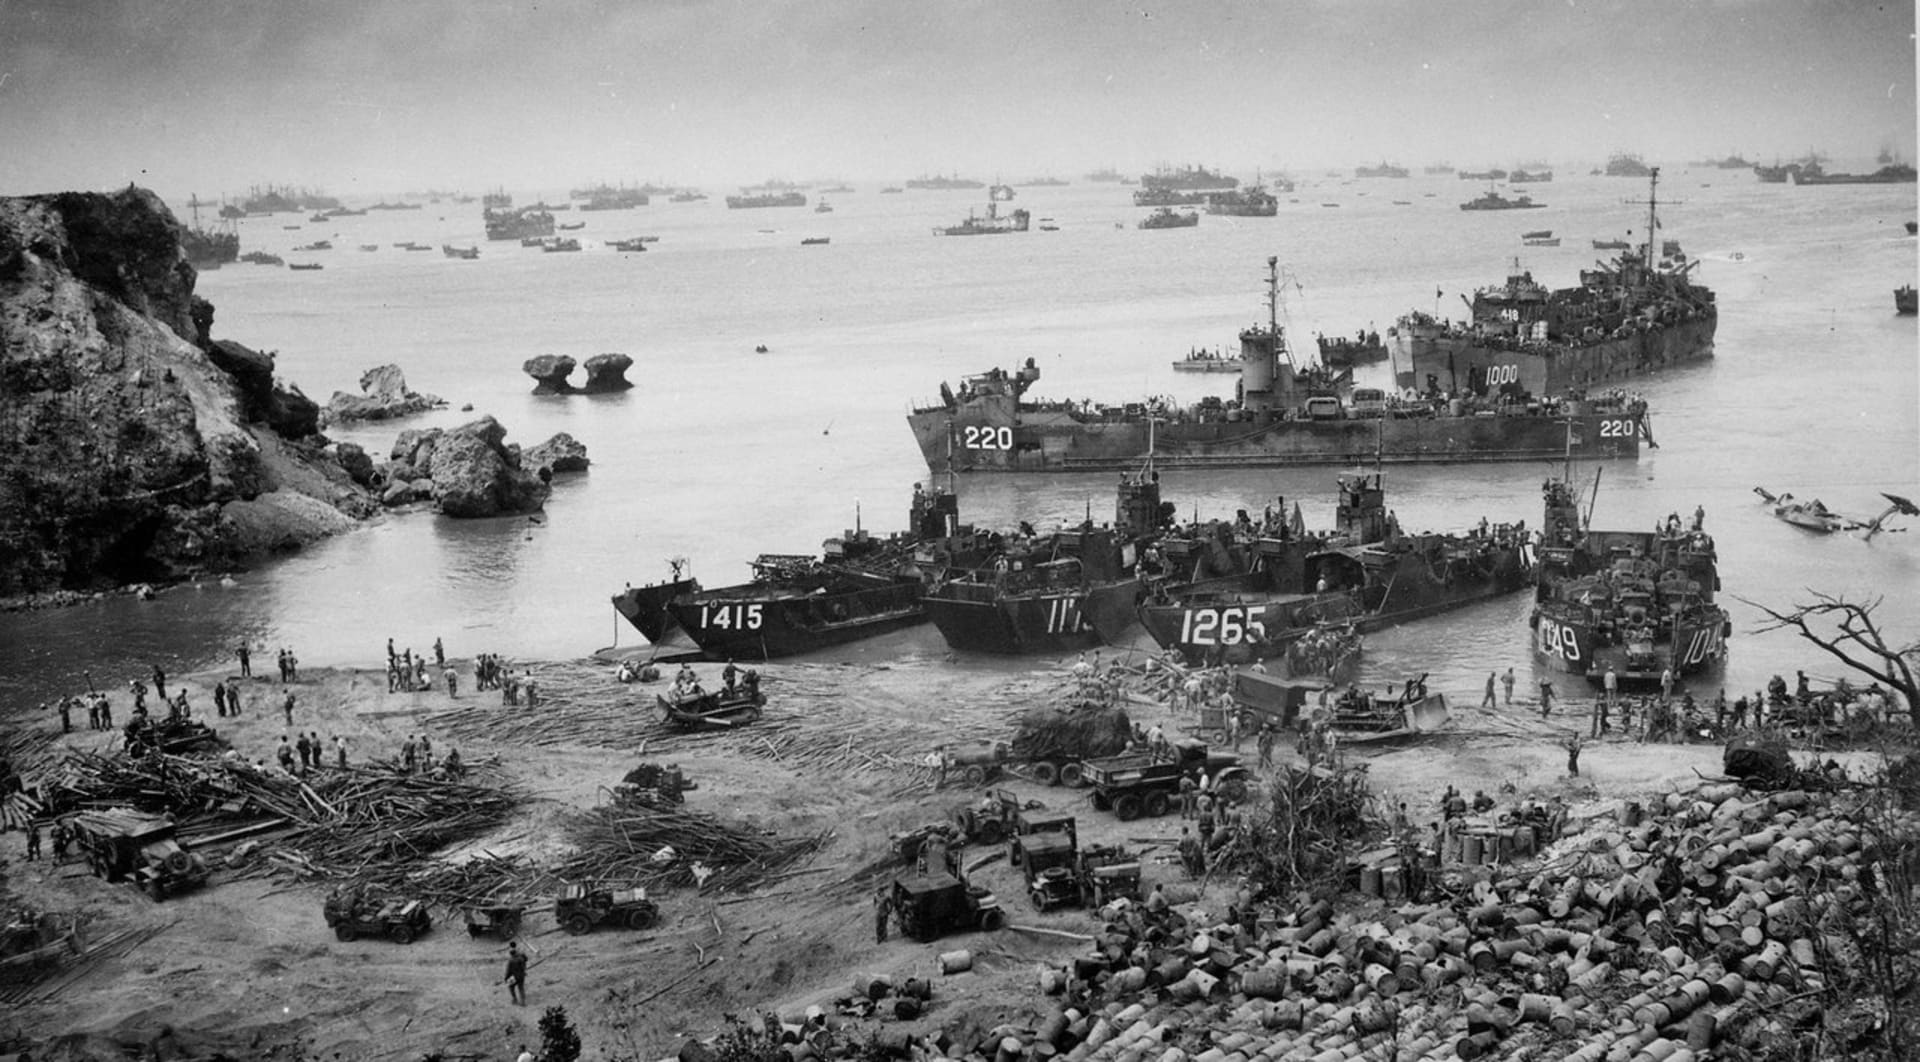 Boje o Okinawu byly poslední velkou bitvou 2. světové války